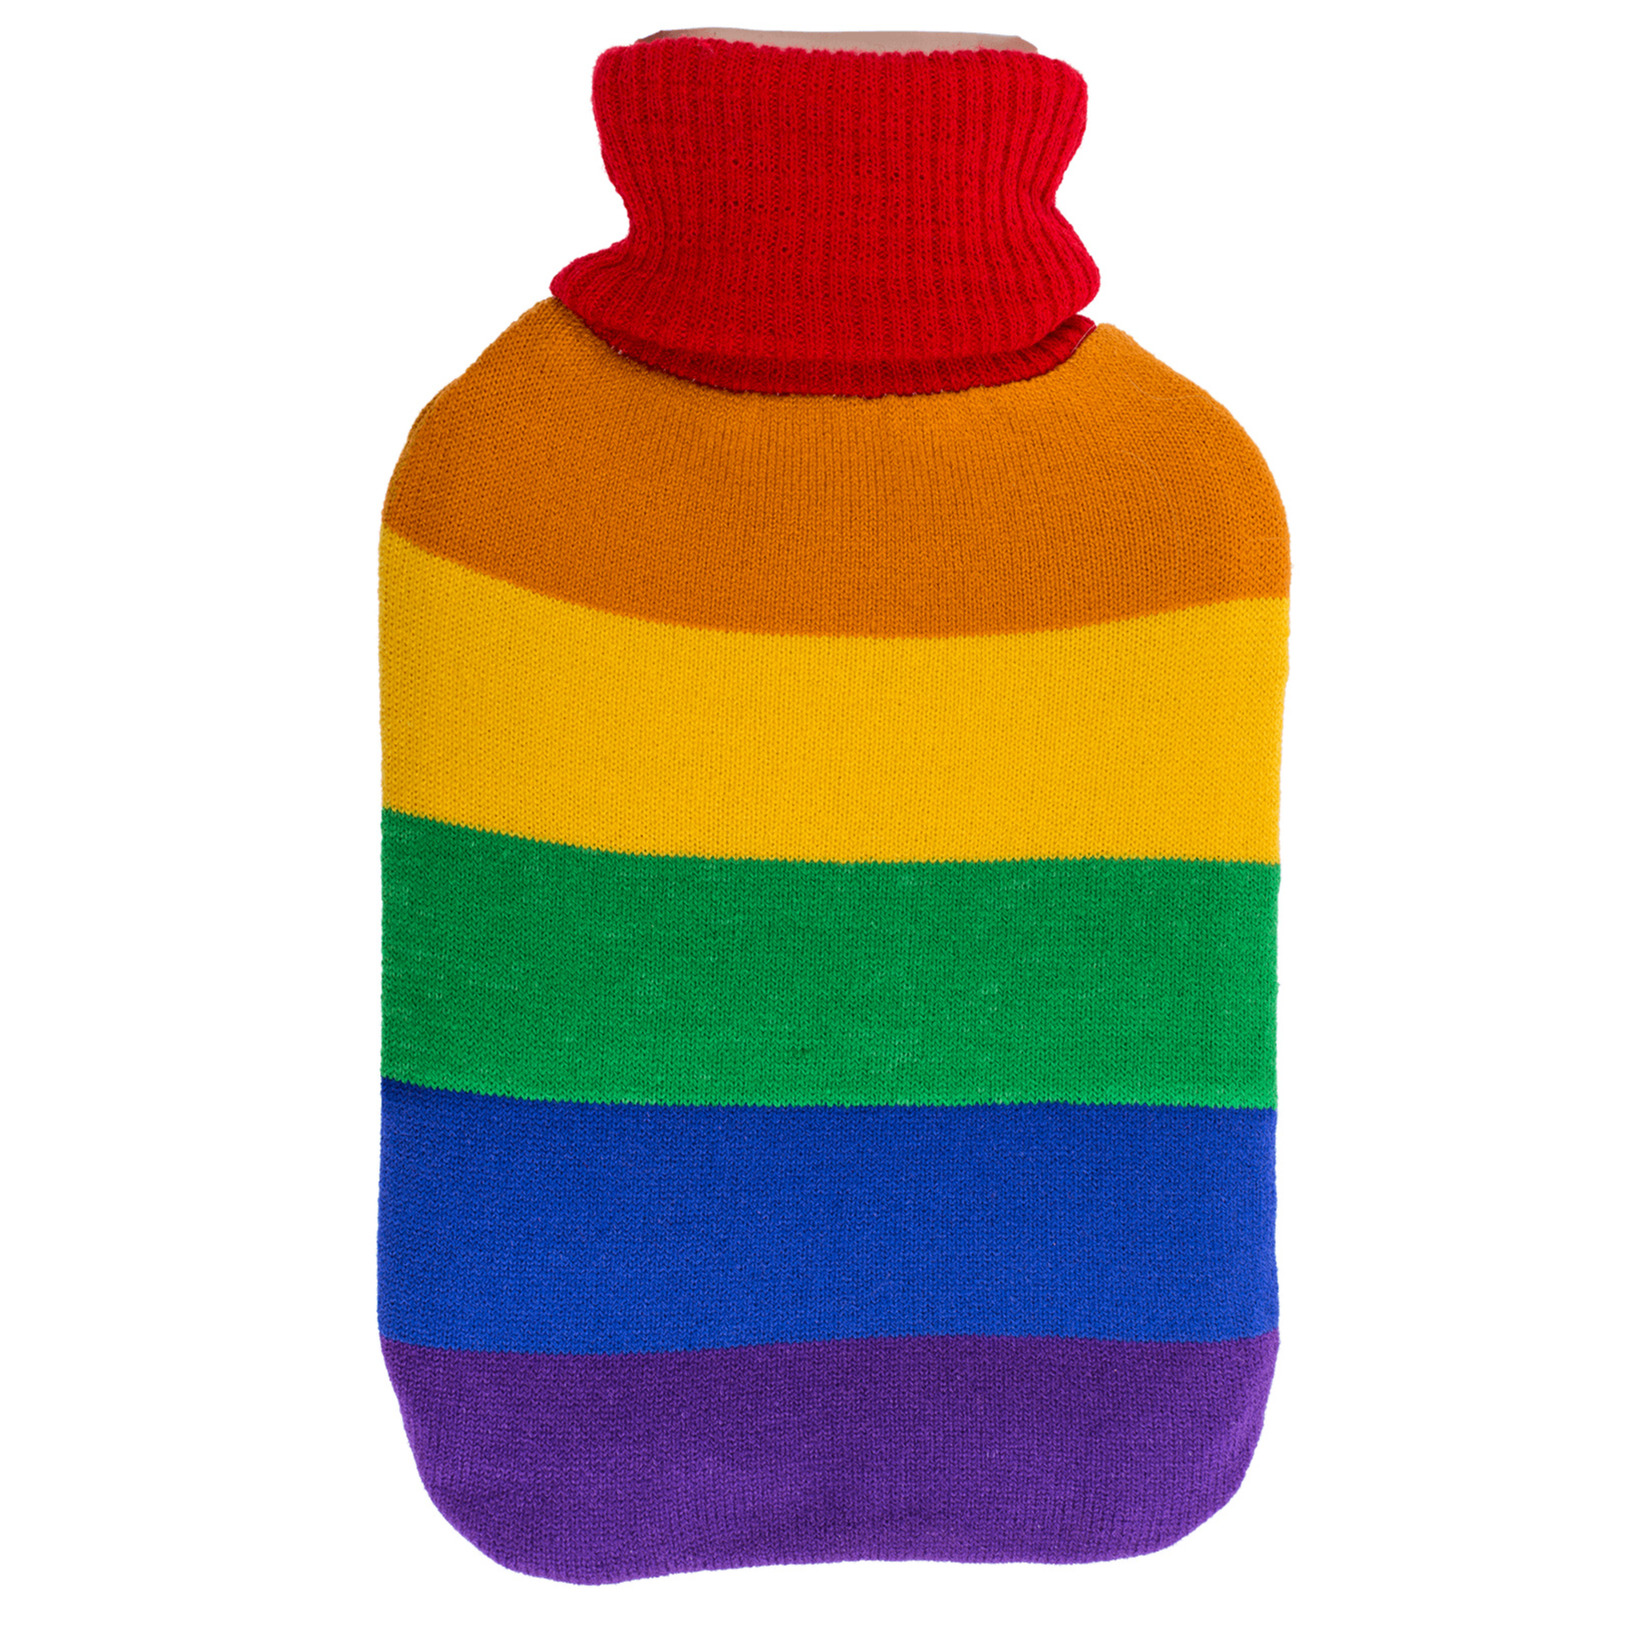 Warmwater kruik - Pride/regenboog thema kleuren - 2 liter - 18 x 34 cm